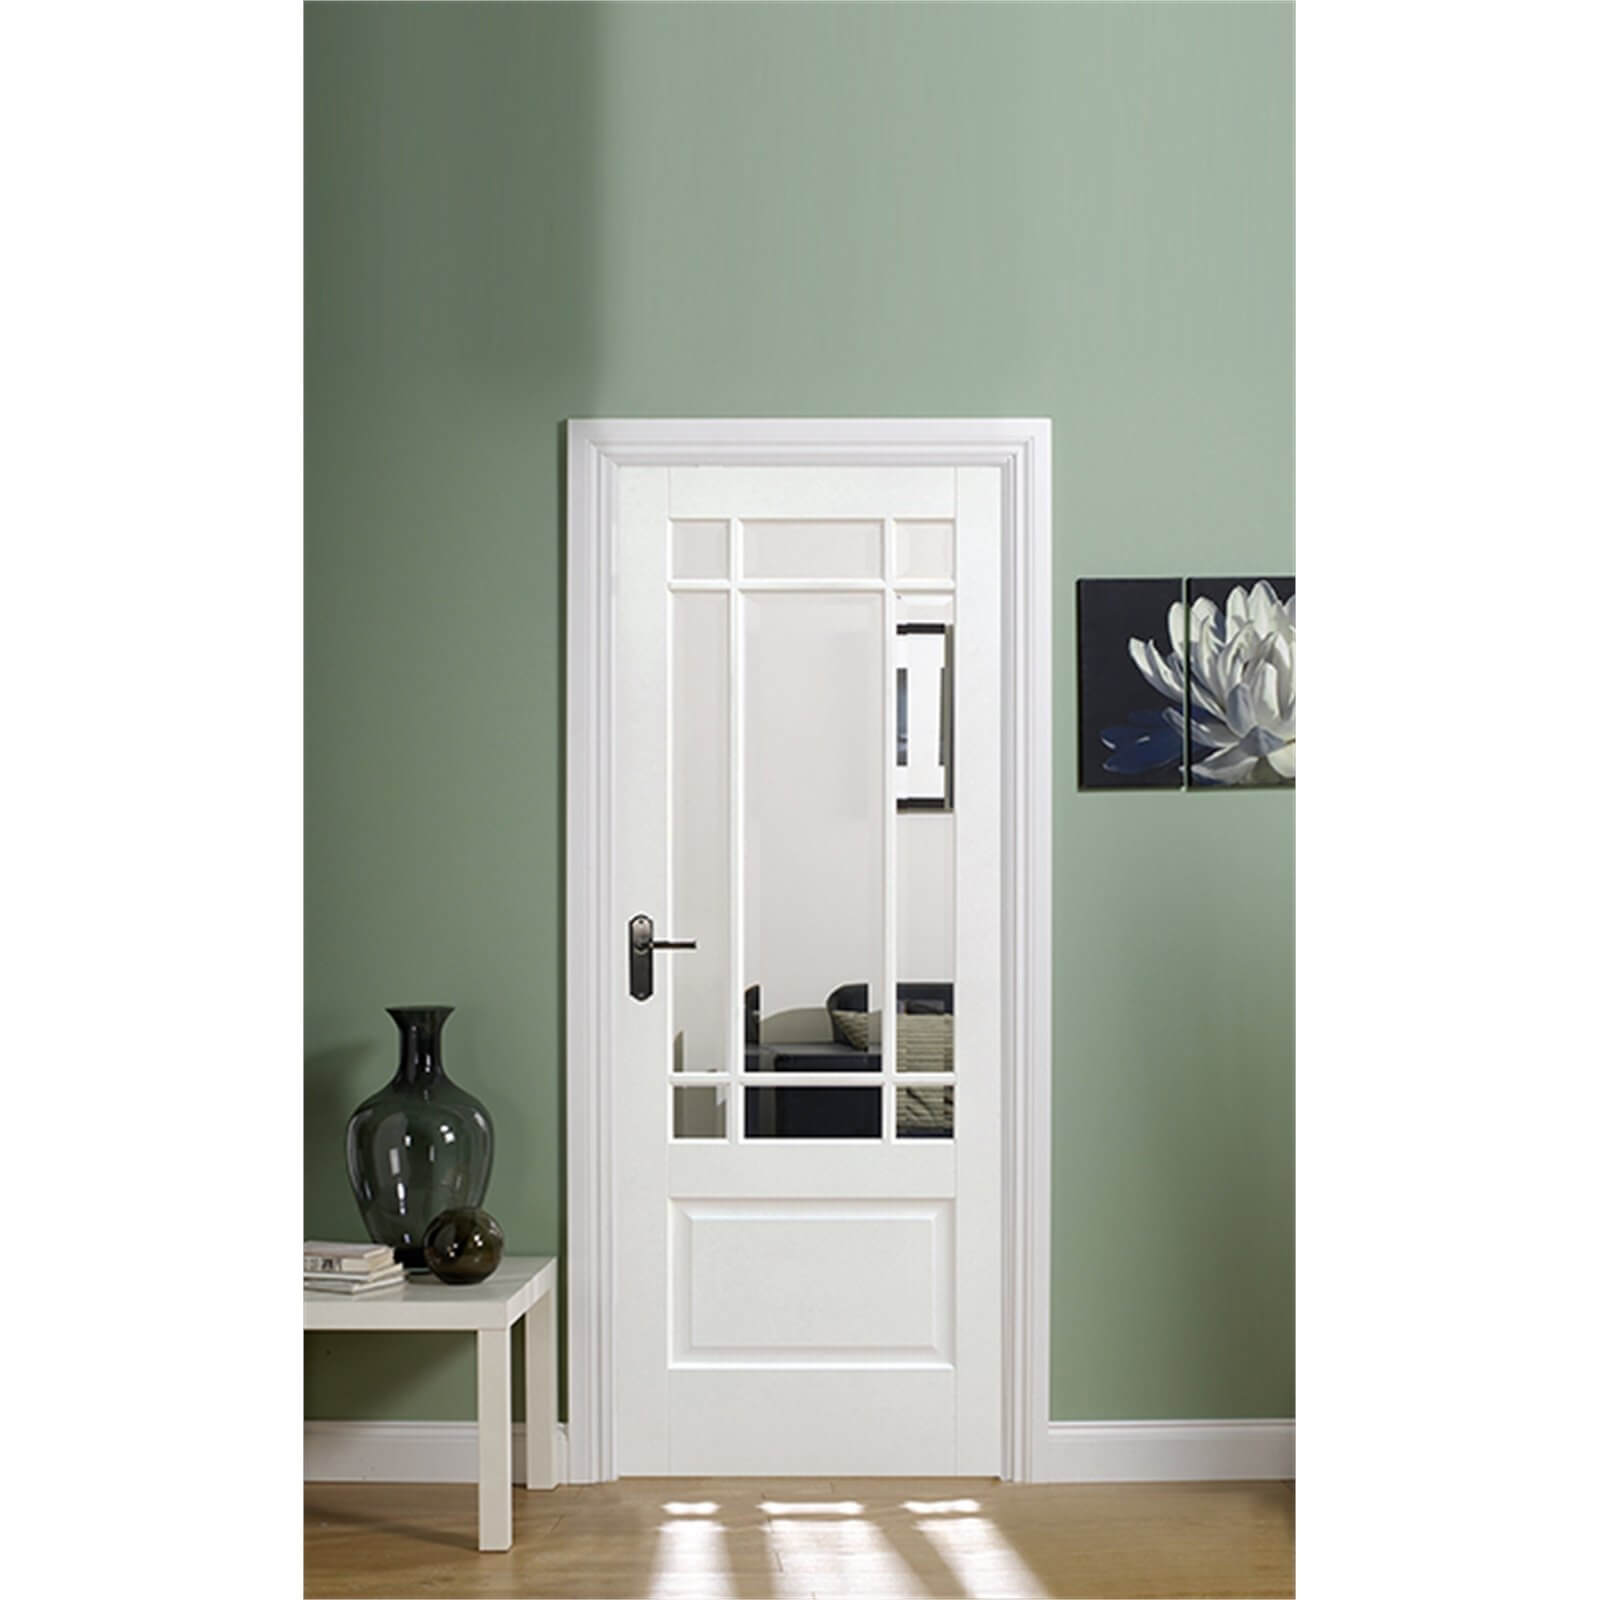 Downham Internal Glazed Primed White 9 Lite Door - 838 x 1981mm